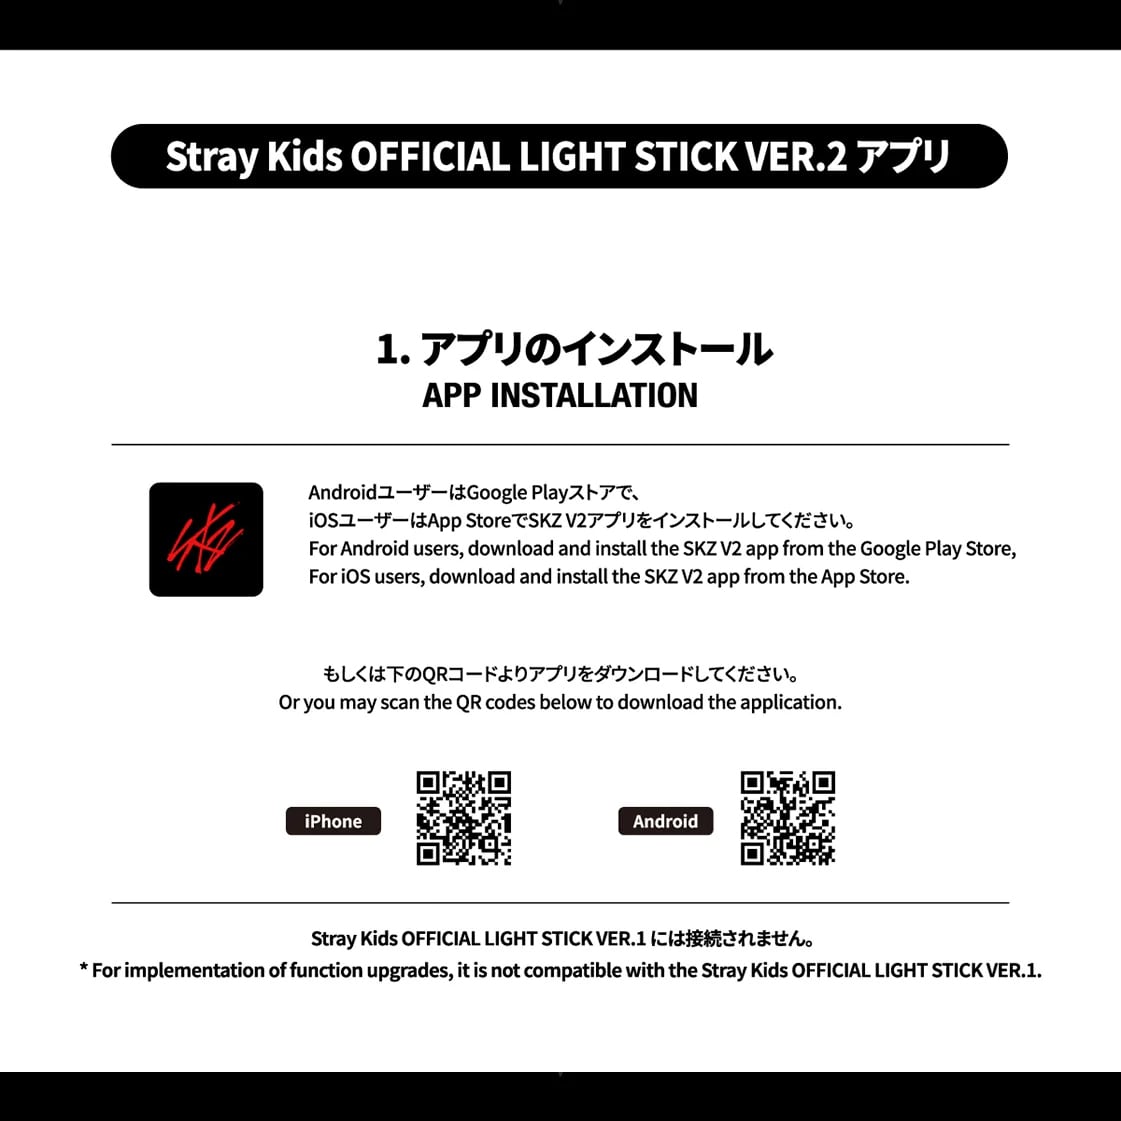 StrayKids OFFICIAL LIGHT STICK ver.2